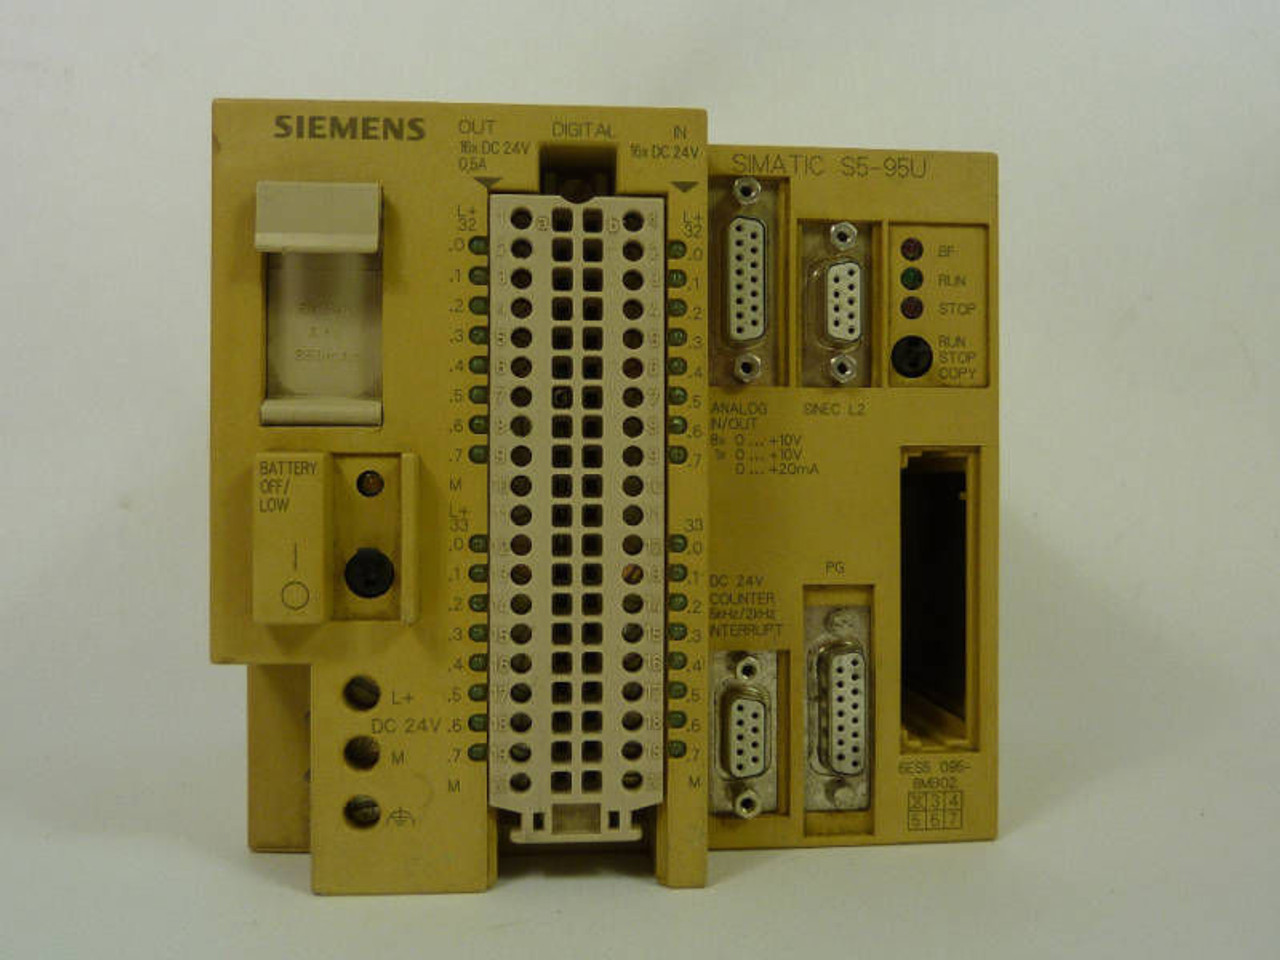 Siemens 6ES5-095-8MB02 CPU Module w/ Sinec USED